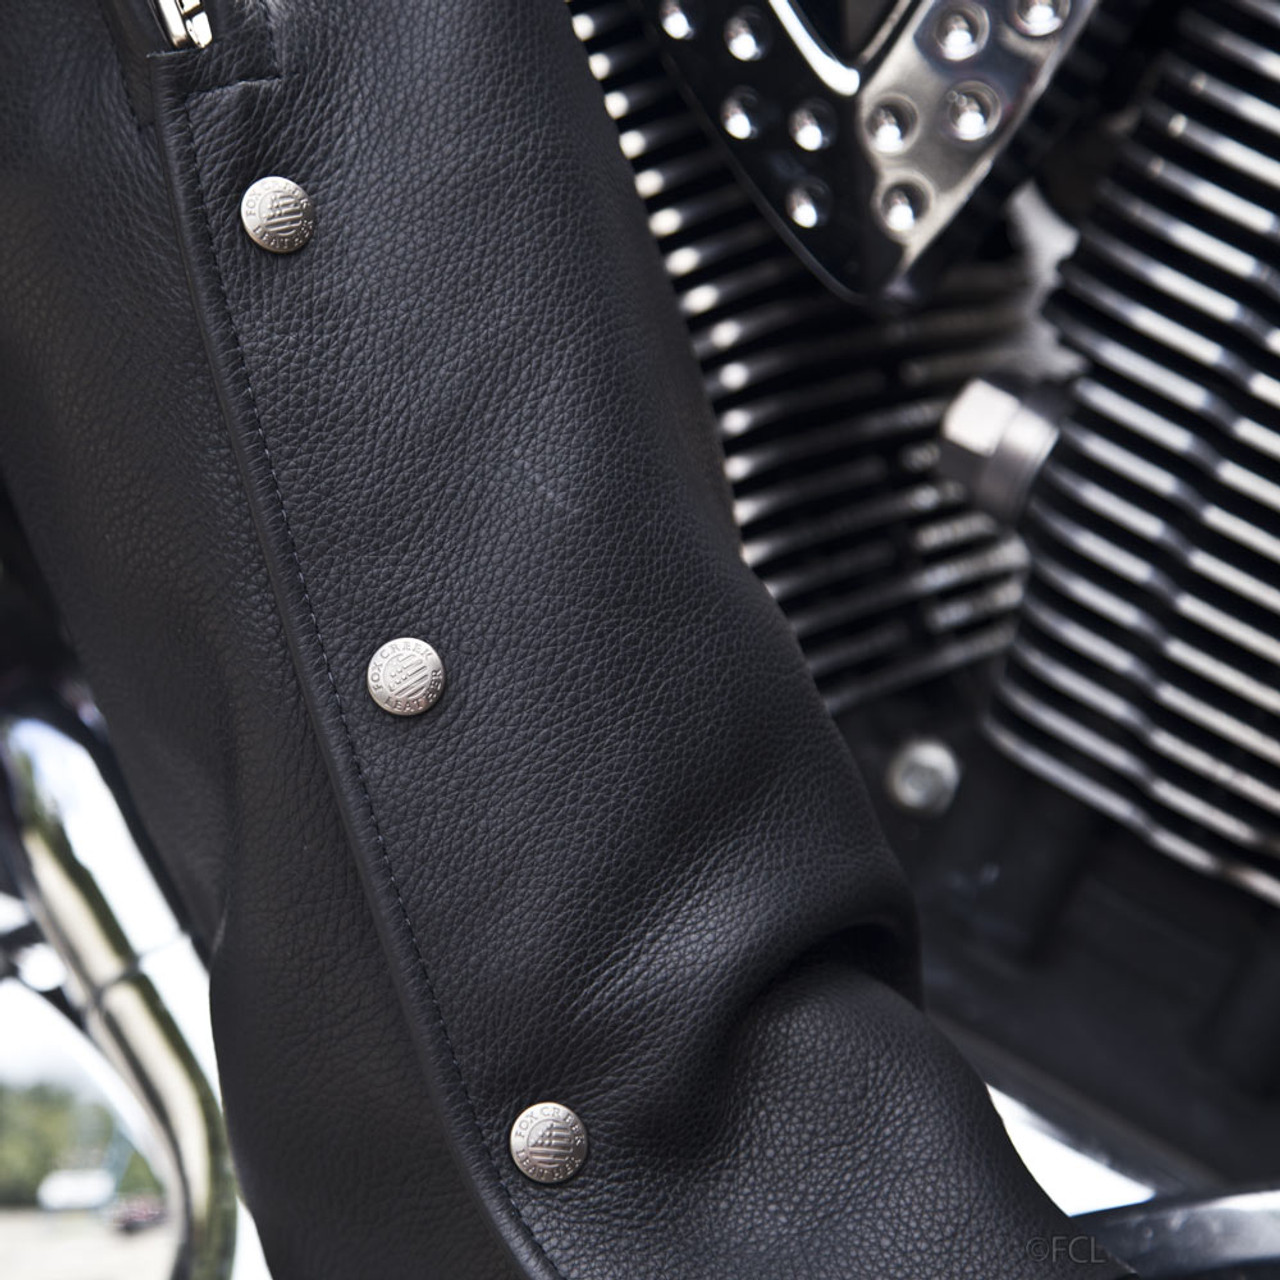 Leather Motorcycle Chaps - Men's Women's Unisex - 4 Pocket - 7145-UN